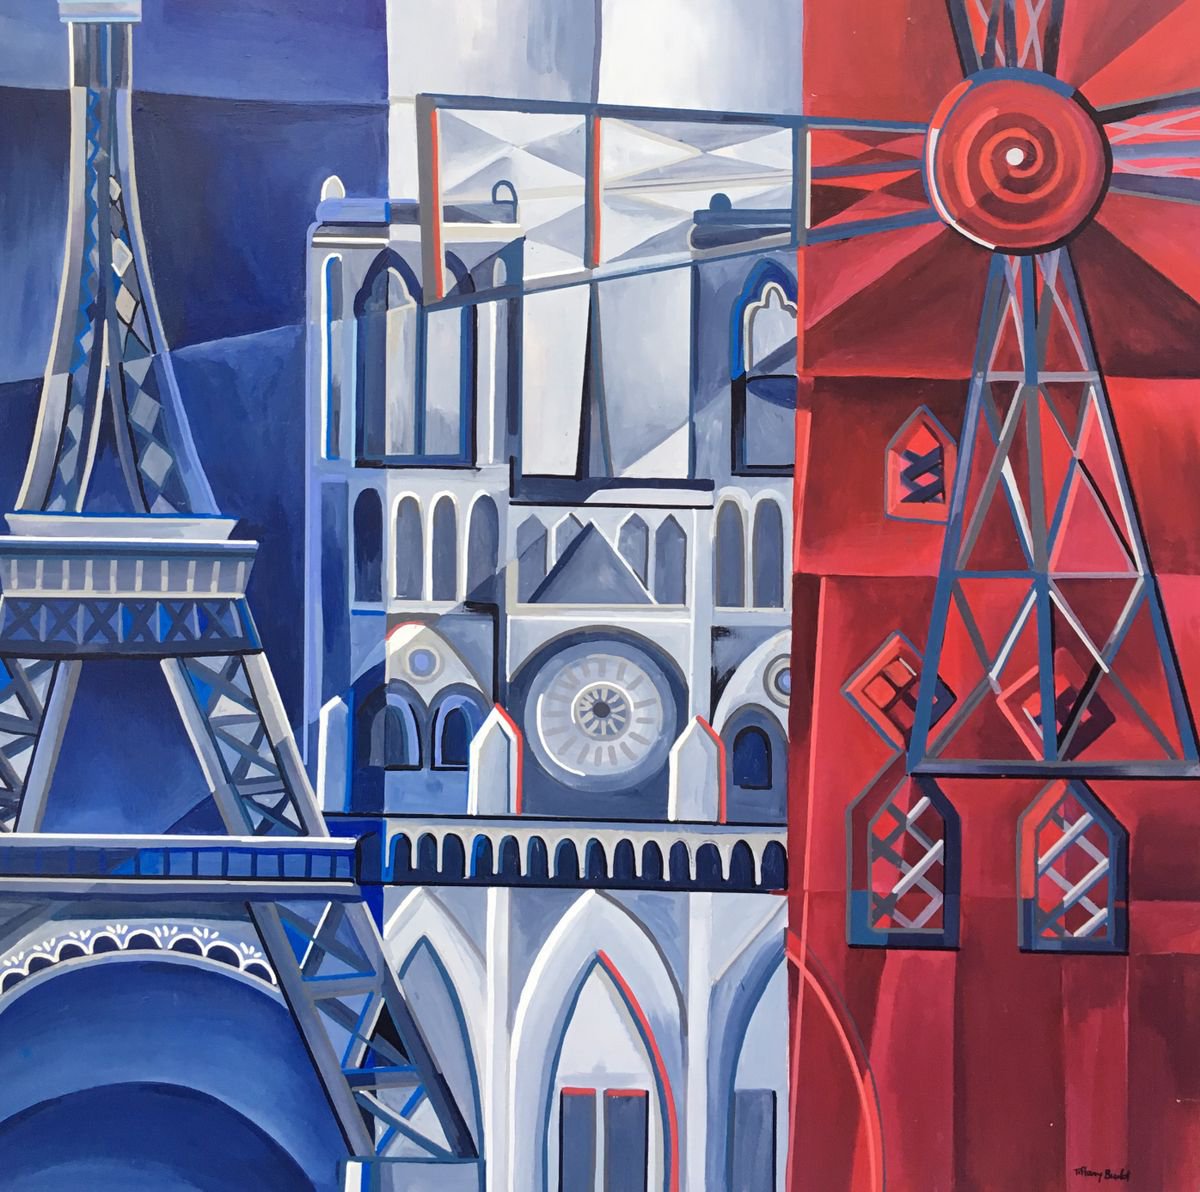 Parisian Icons 2 by Tiffany Budd